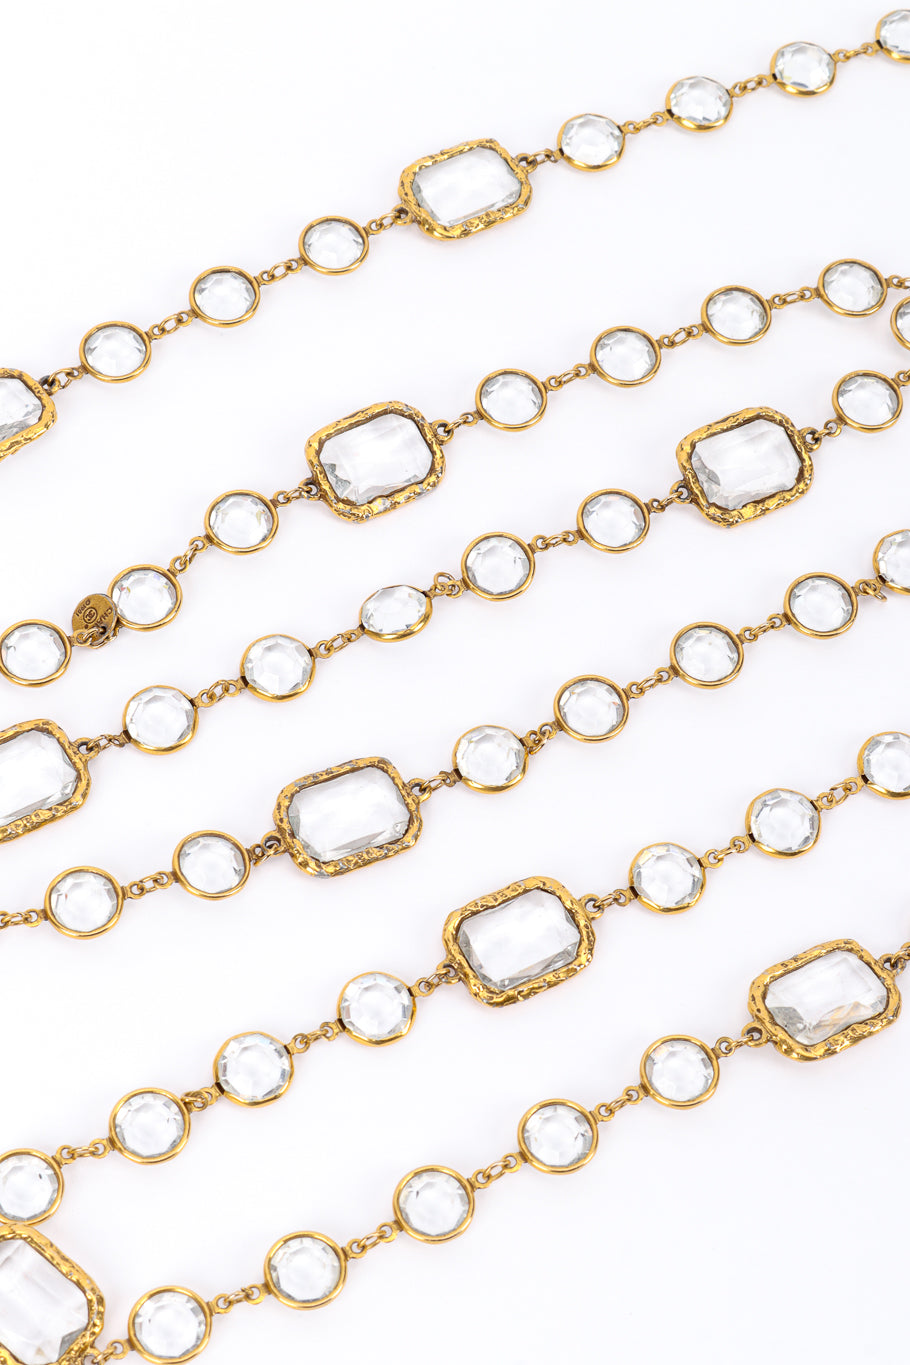 Vintage Chanel Crystal Sautoir Necklace II crystal strand @recessla